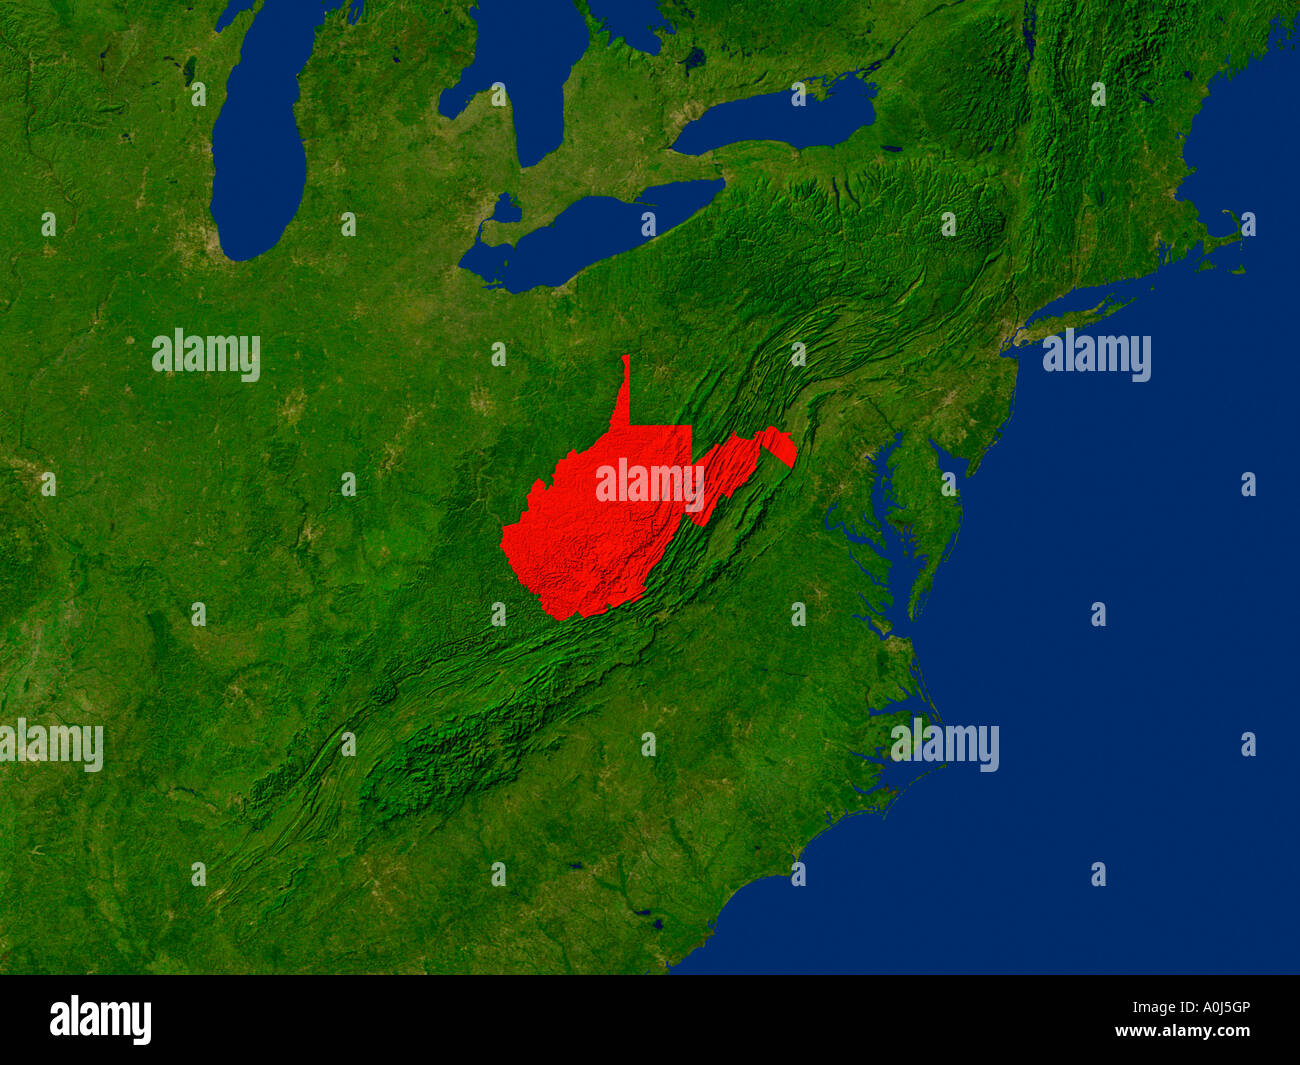 Ha evidenziato un'immagine satellitare di West Virginia Stati Uniti d'America Foto Stock